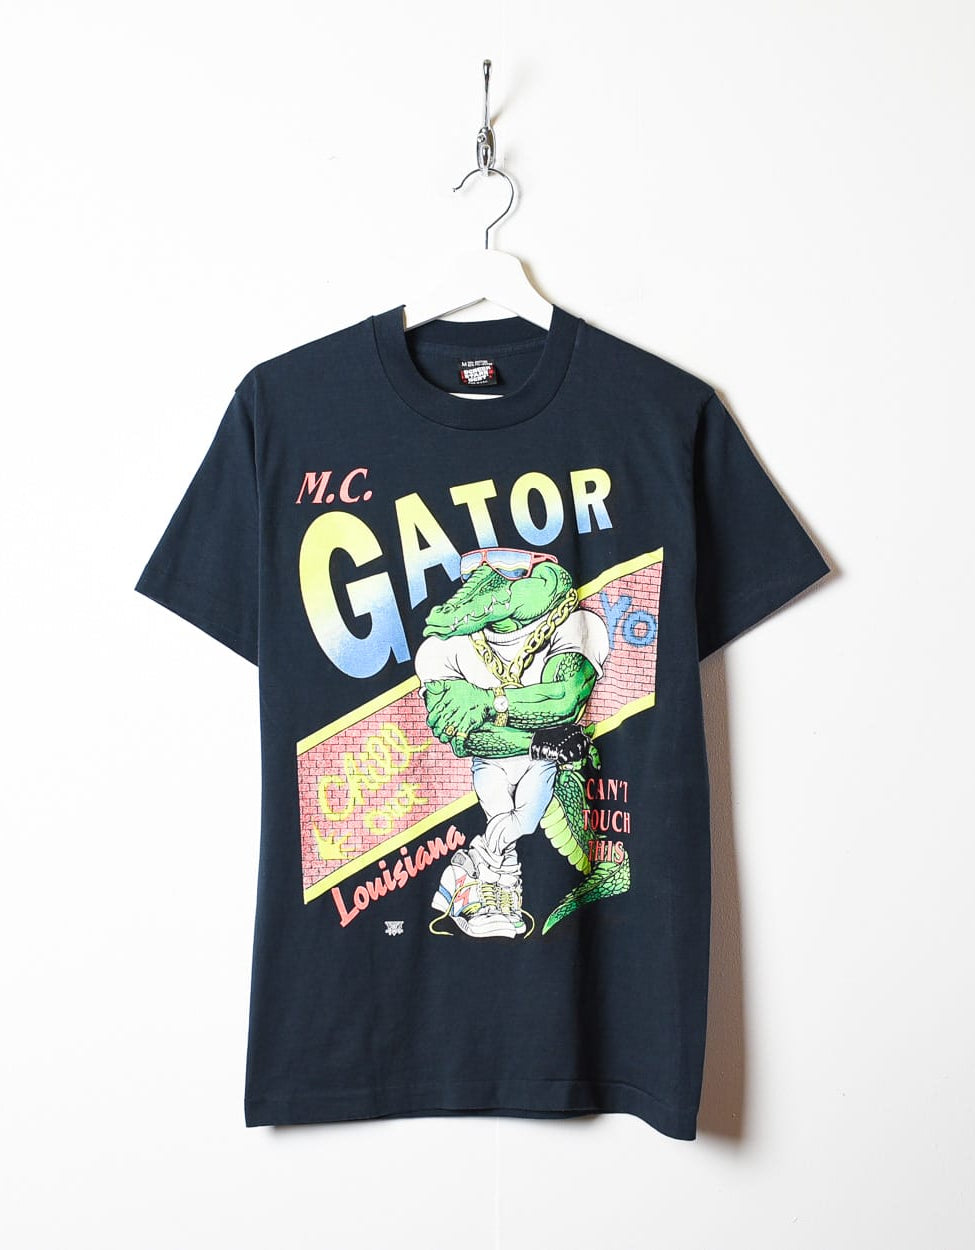 Black MC Gator Louisiana Single Stitch T-Shirt - Small